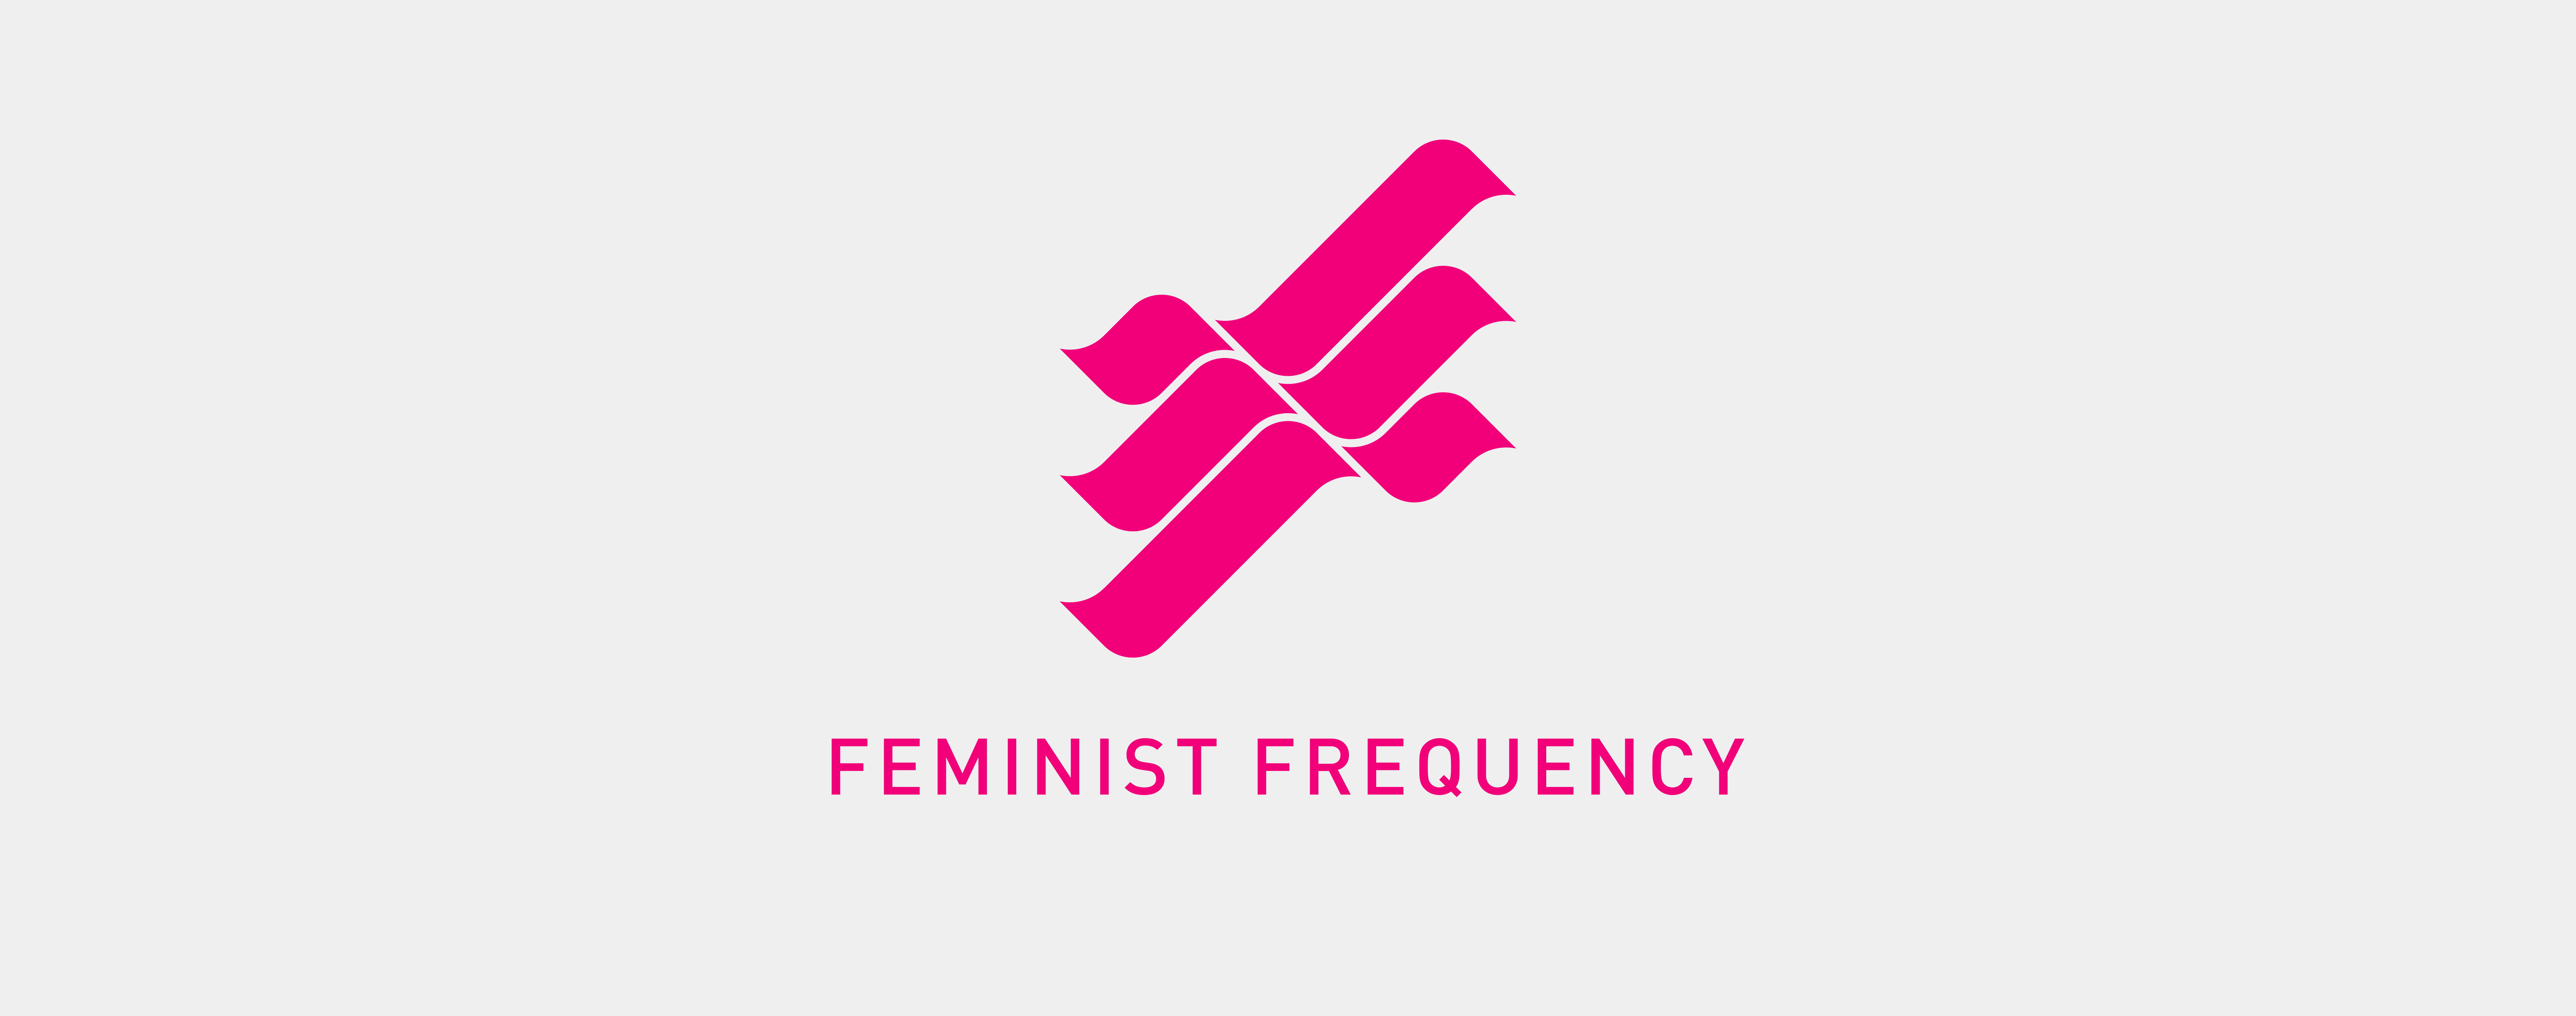 Feminist Logo - Redesigned Feminist Frequency Logo — Feminist Frequency